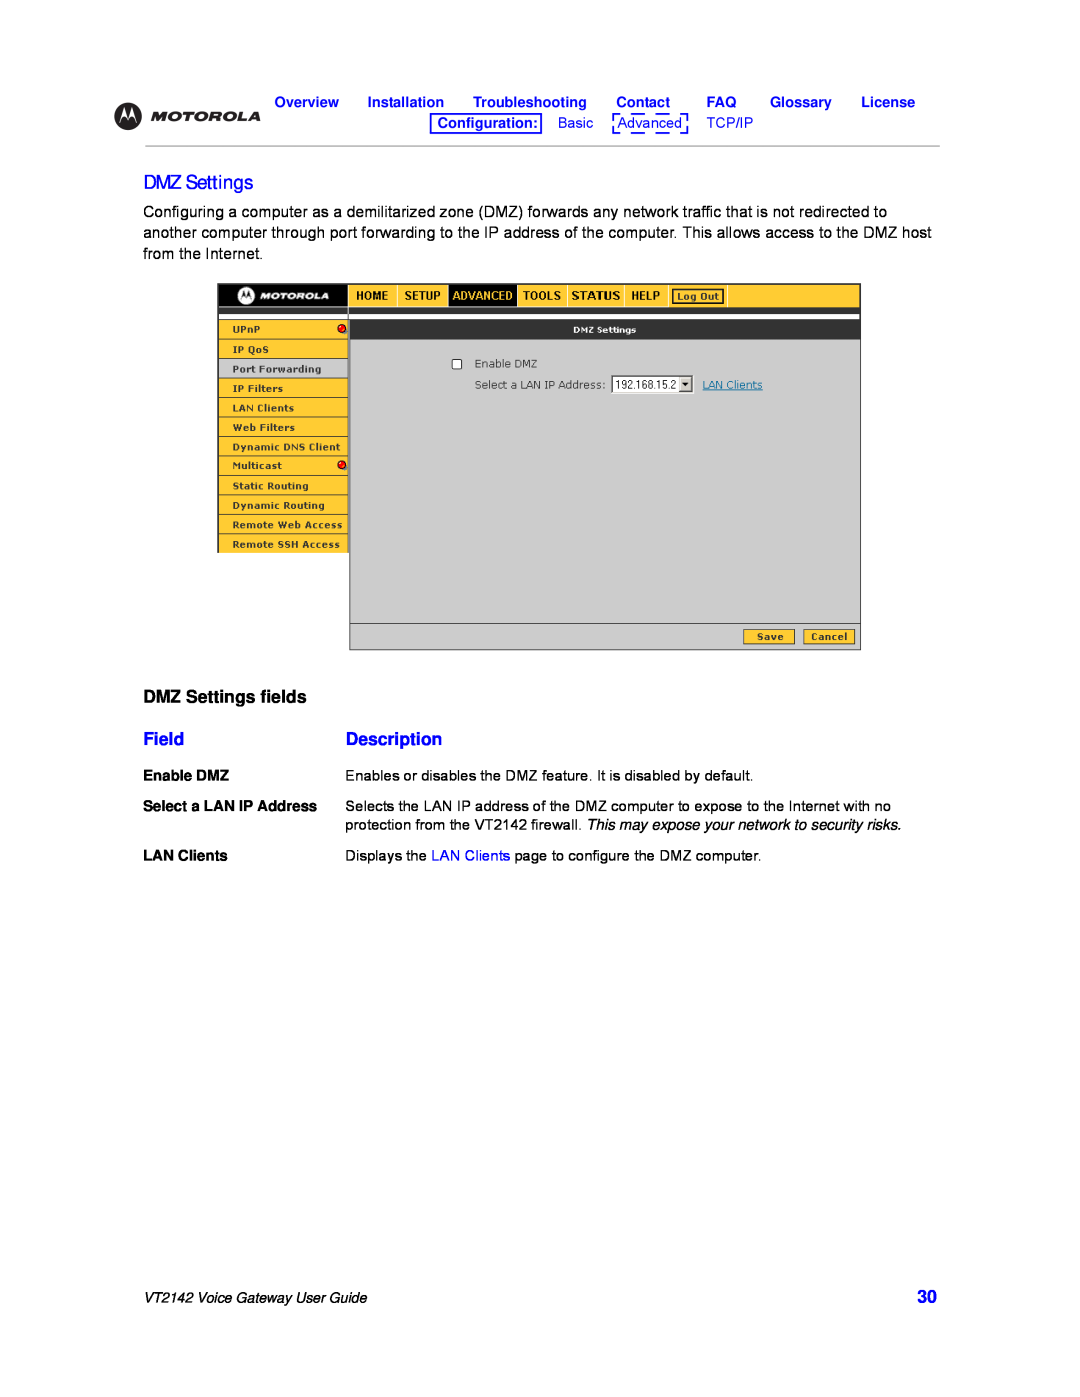 Motorola VT2142 manual DMZ Settings fields, Field, Description 